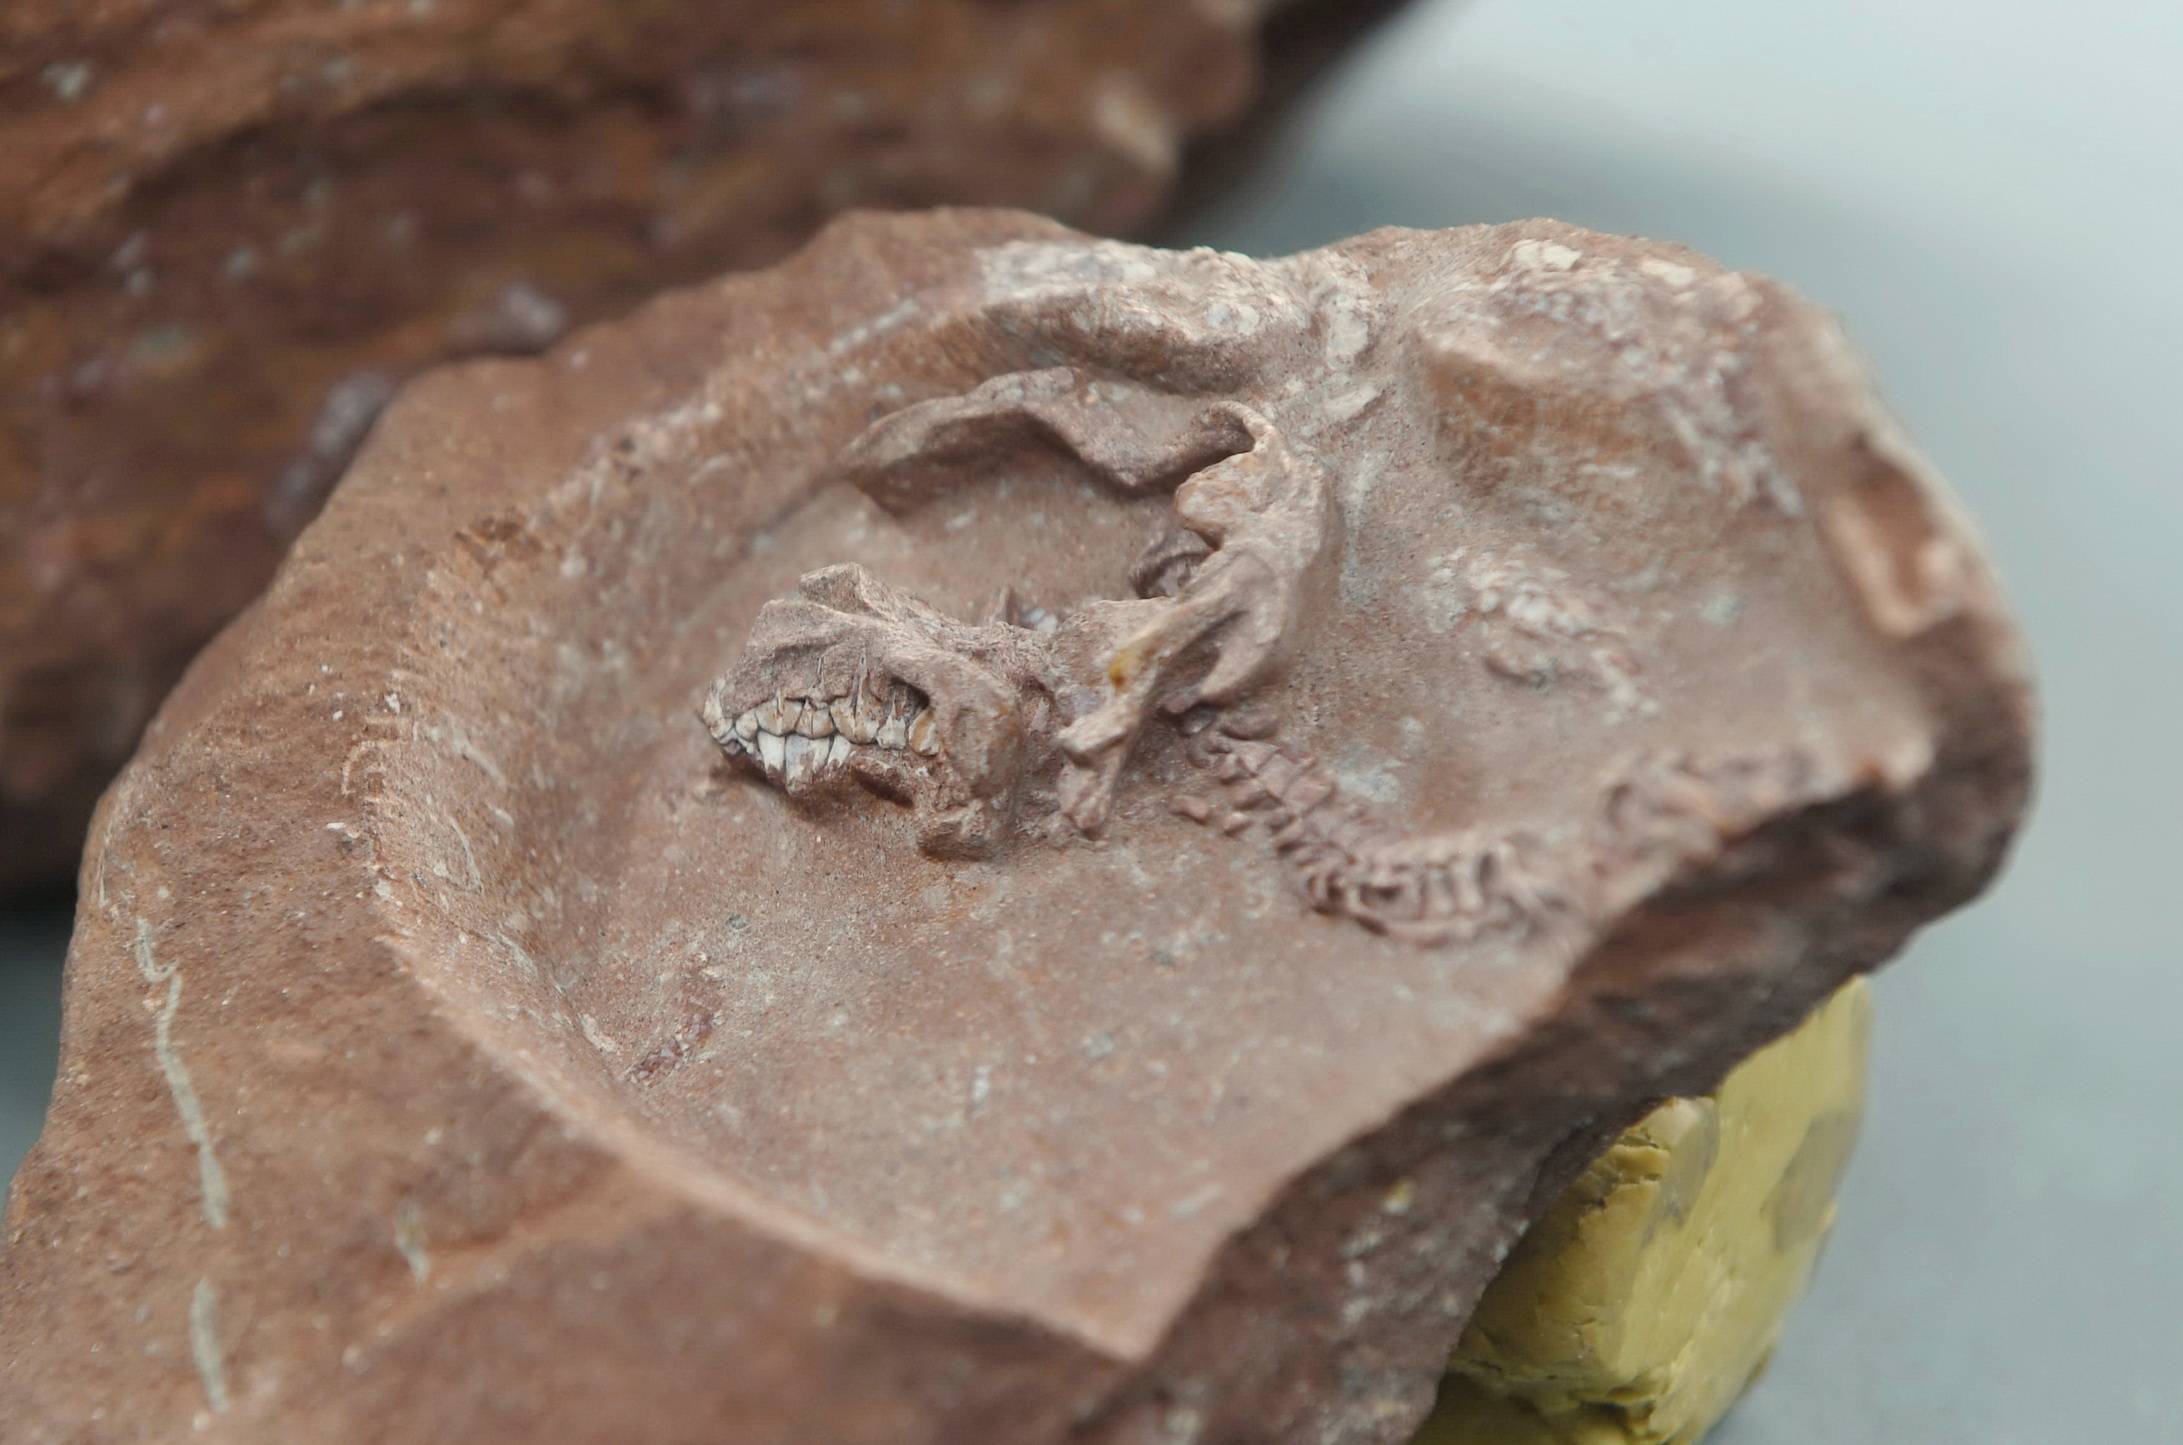 我国发现保存完整的鸭嘴龙胚胎化石